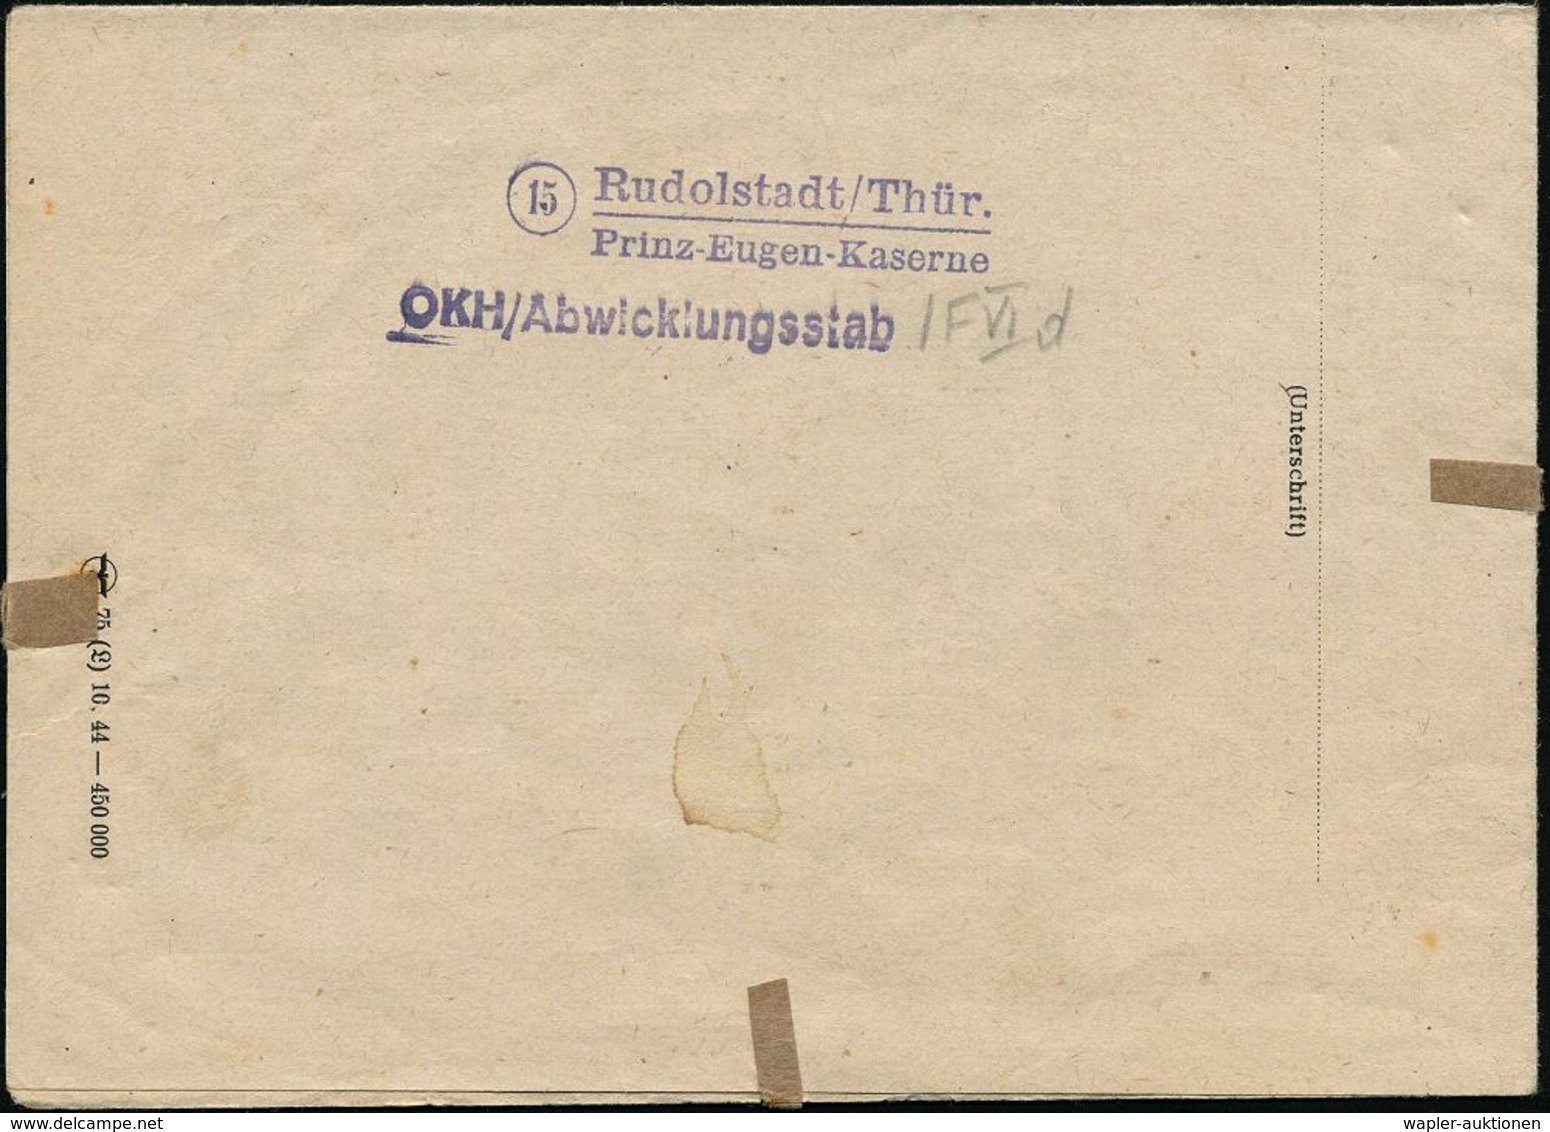 RUDOLSTADT/ O 1945 (17.3.) 2K-Steg + Viol. 1K: Wehrmacht/Briefstempel (unten Undeutl.), Rs. Viol. 2L: (15) Rudolstadt-Th - 2. Weltkrieg